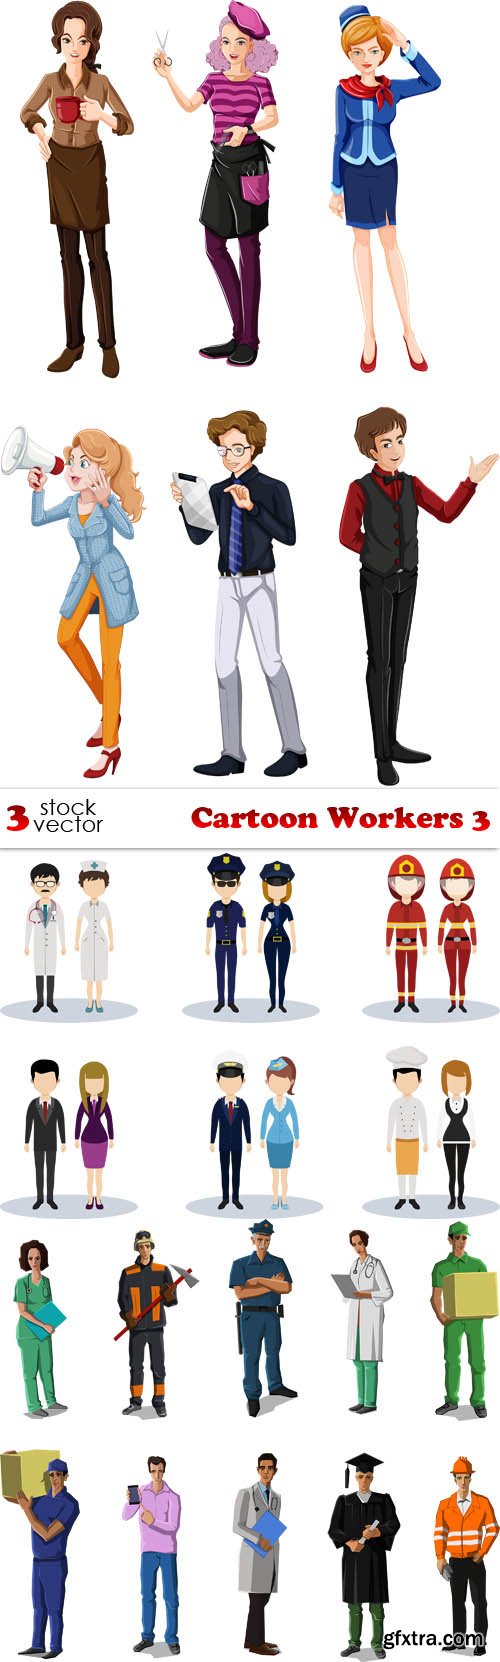 Vectors - Cartoon Workers 3